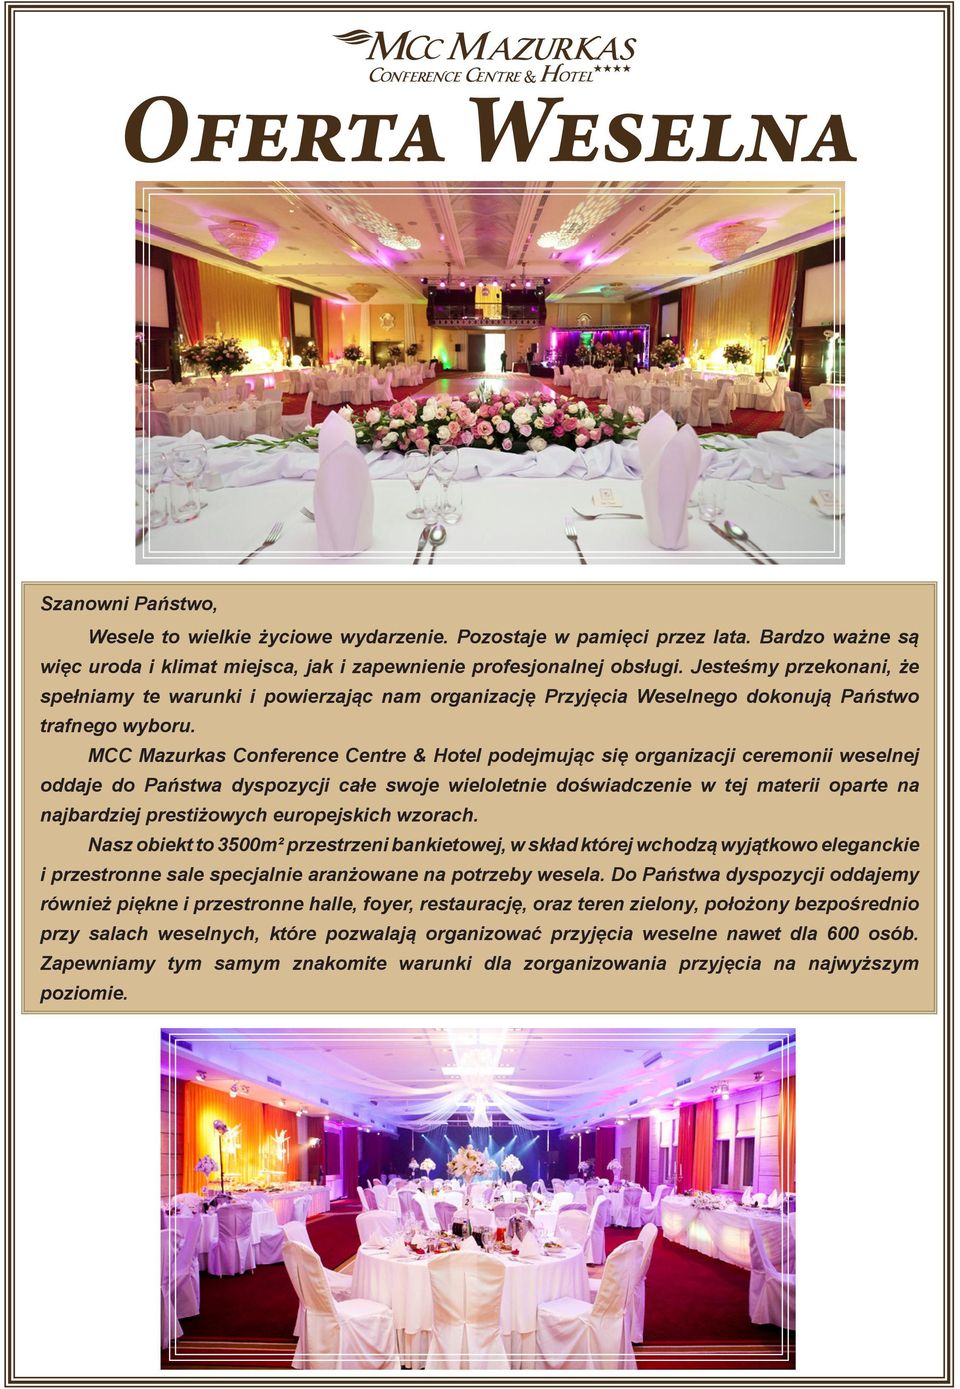 MCC Mazurkas Conference Centre & Hotel podejmując się organizacji ceremonii weselnej oddaje do Państwa dyspozycji całe swoje wieloletnie doświadczenie w tej materii oparte na najbardziej prestiżowych